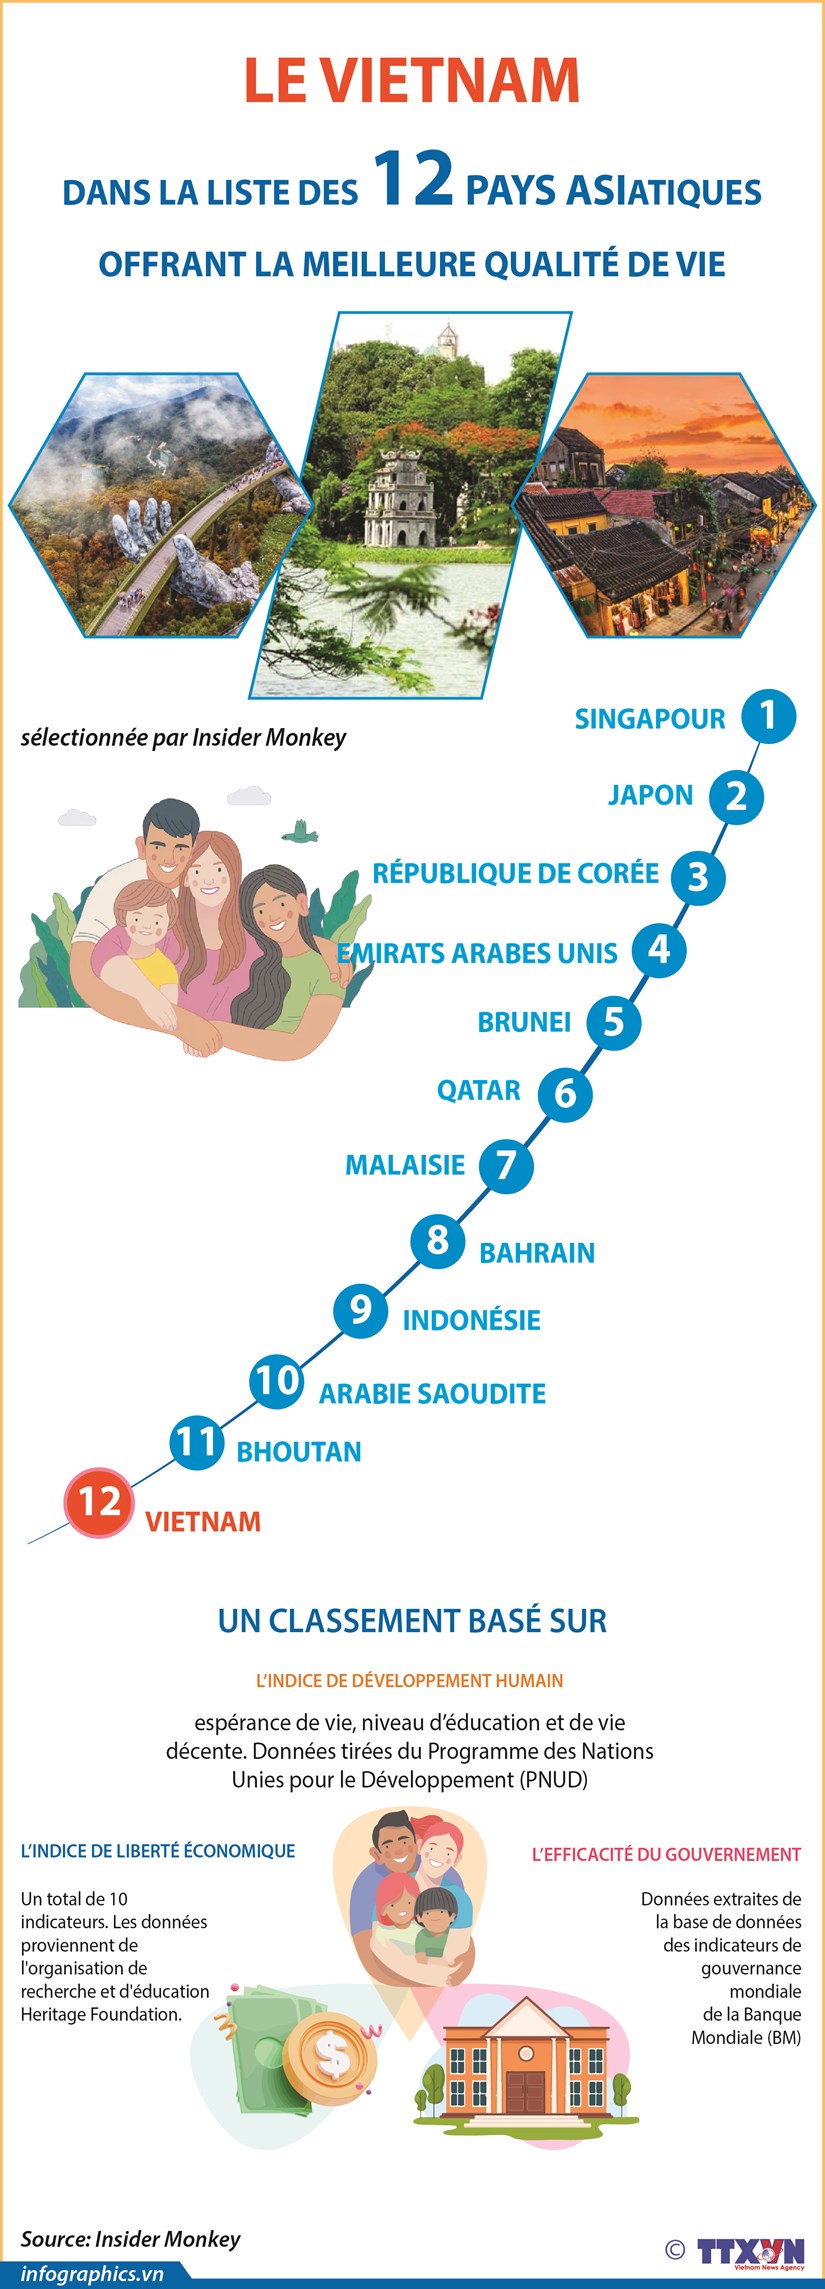 Le Vietnam dans la liste des 12 pays asiatiques offrant la meilleure qualite de vie hinh anh 1